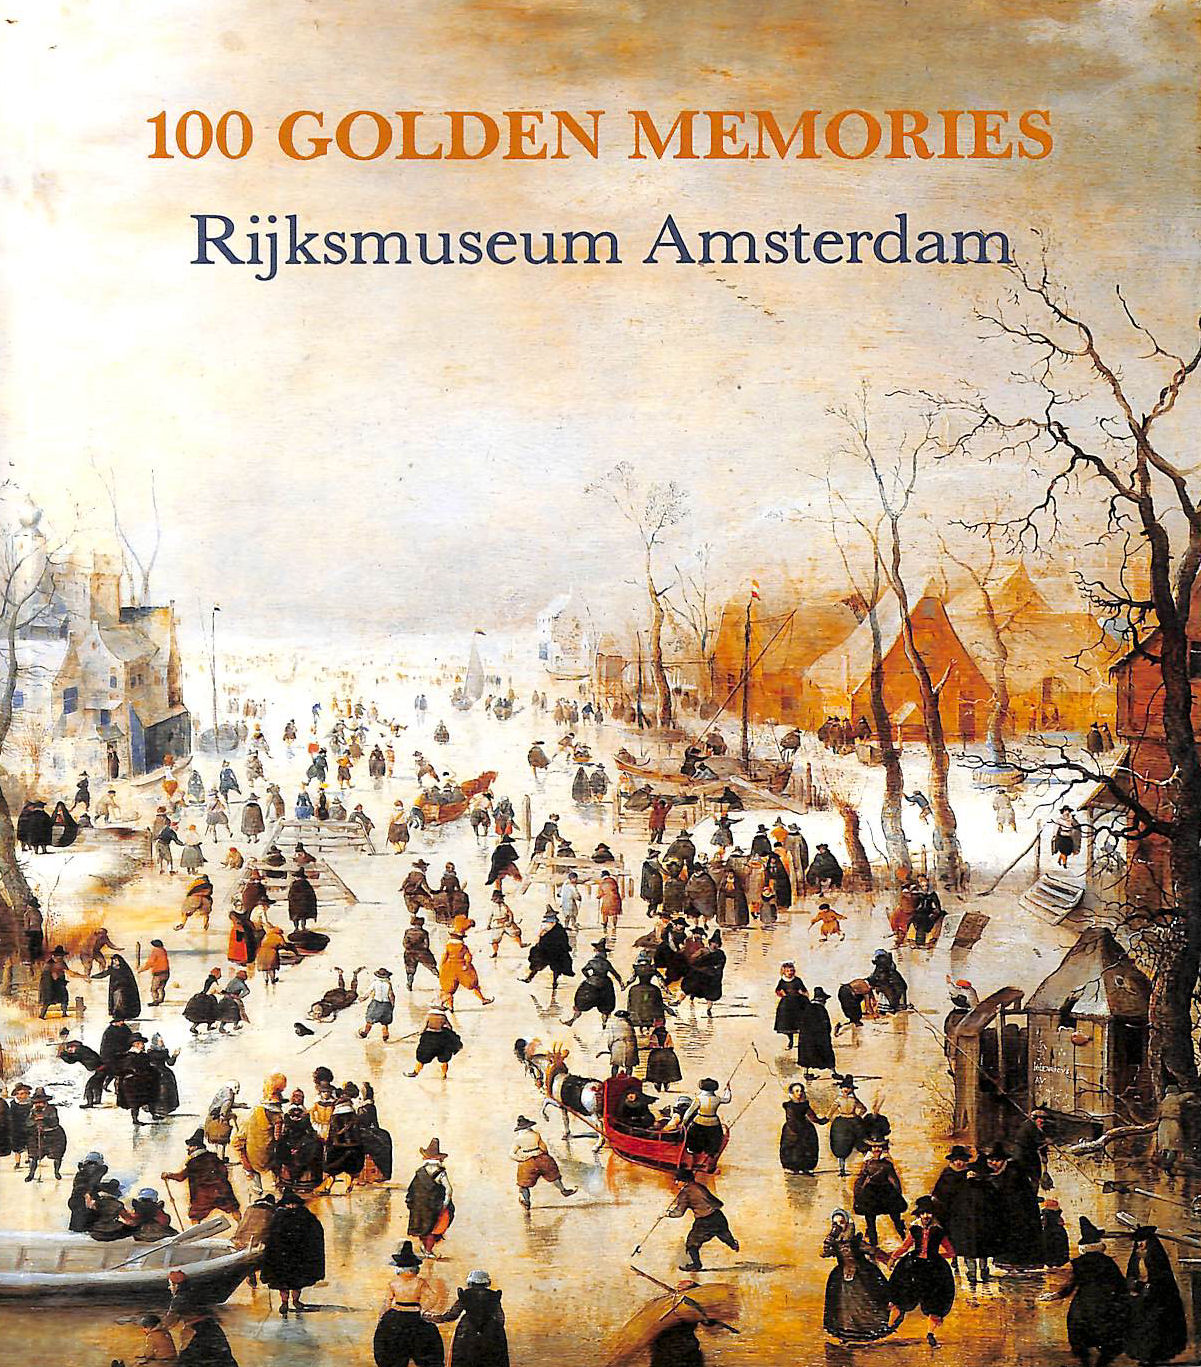 ANON - 100 Golden Memories Rijksmuseum Amsterdam